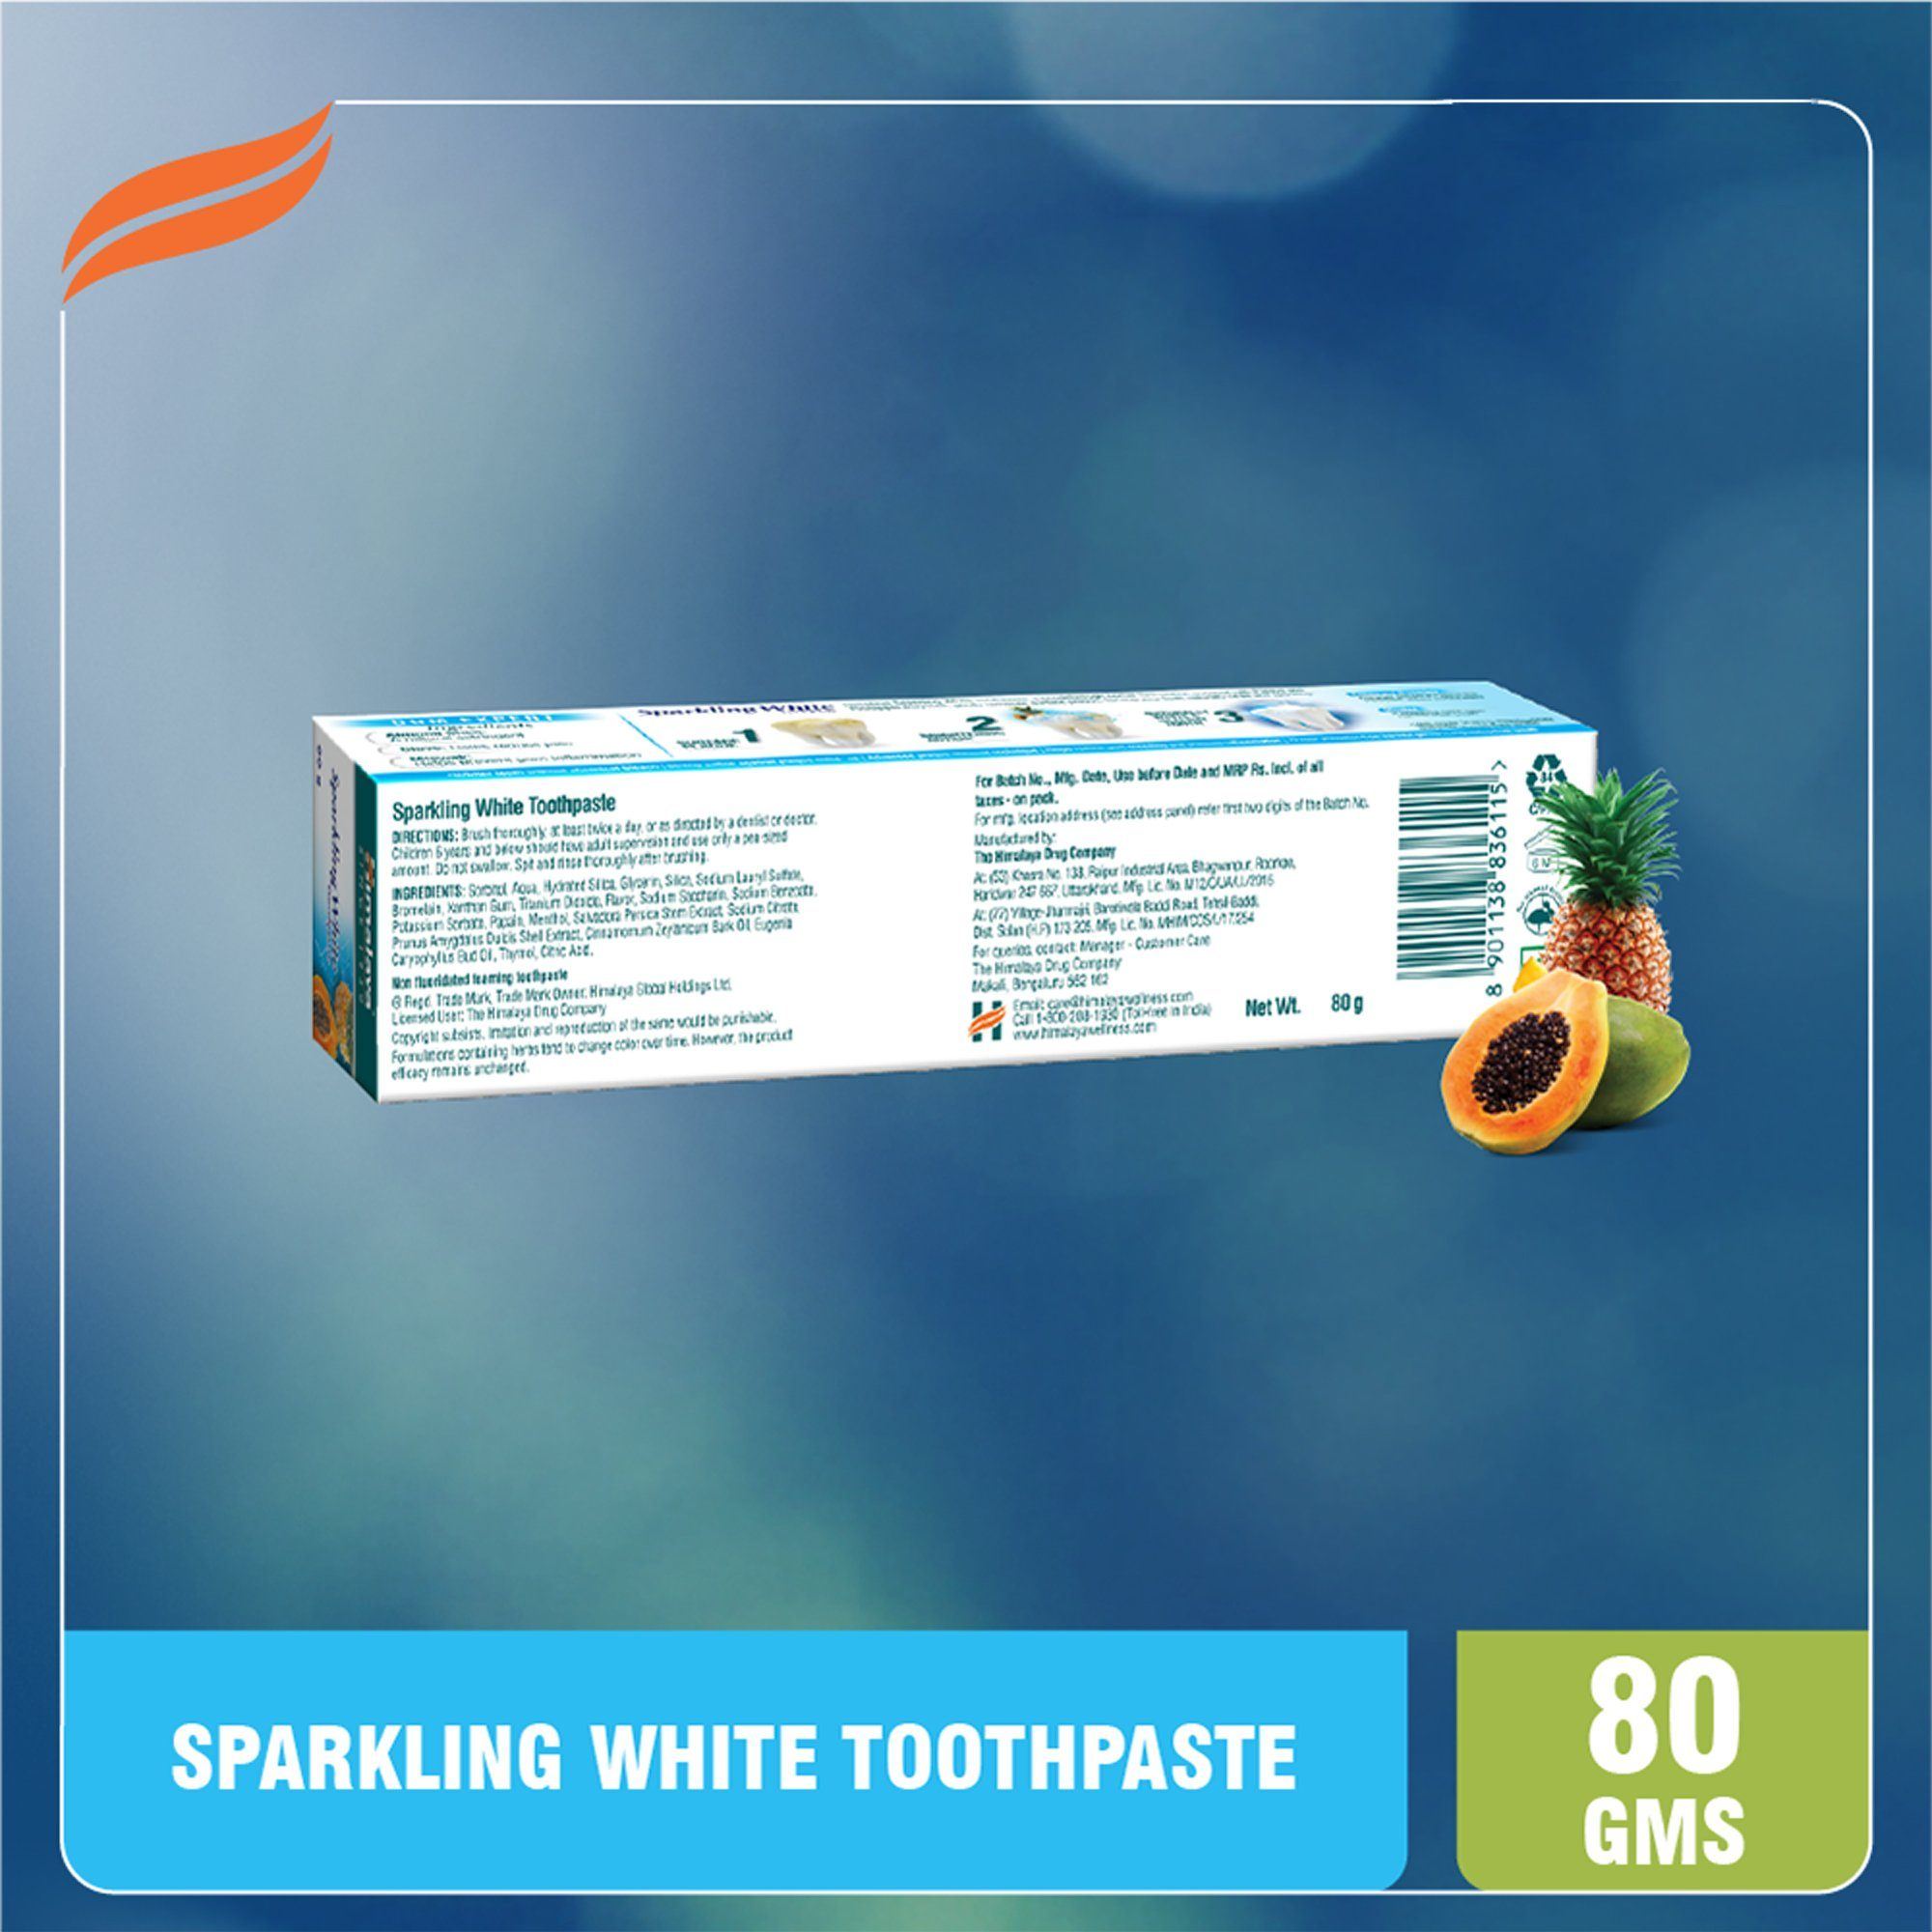 Himalaya Sparkling White Toothpaste Ingredients